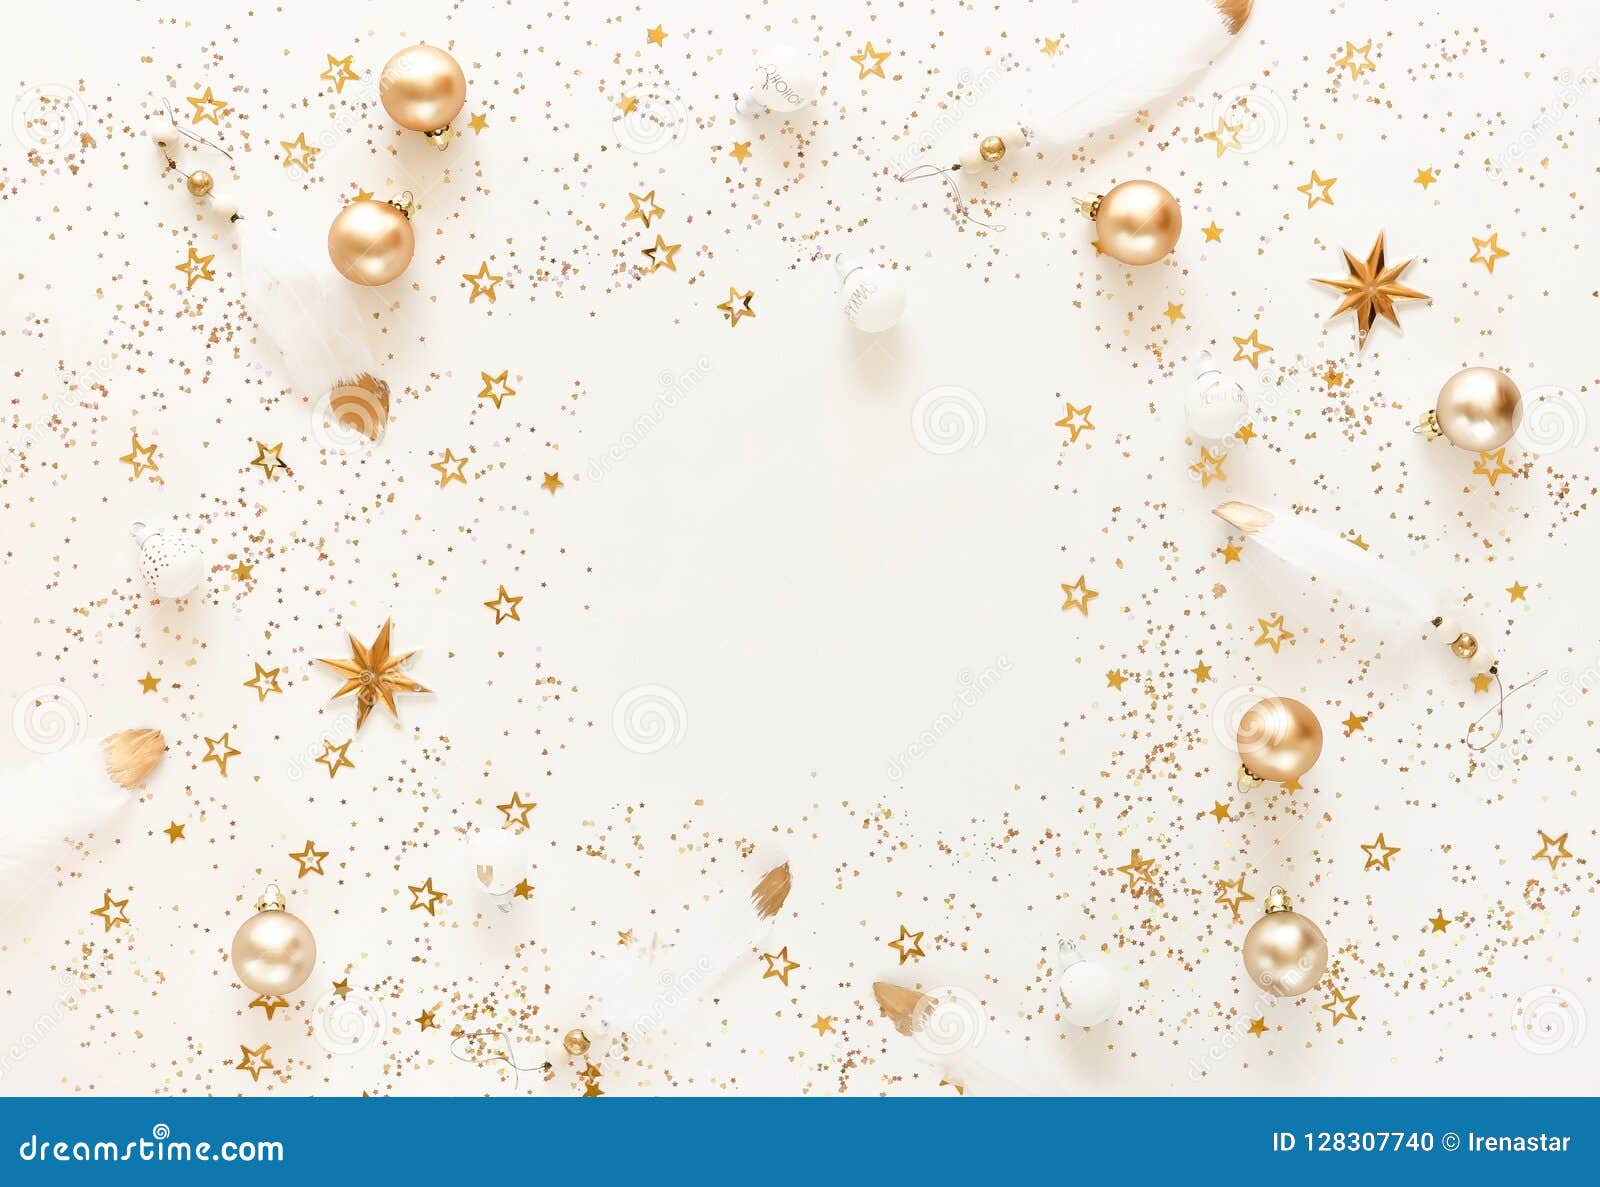 Hãy tưởng tượng về mùa Giáng Sinh với những hình nền Giáng sinh vàng trắng lộng lẫy! Những bức hình này sẽ mang đến cho bạn không gian ấm áp và đầy màu sắc cho màn hình của bạn. Hãy tiếp thêm niềm vui và phấn khởi cho ngôi nhà và gia đình của bạn trong lễ hội Giáng Sinh năm nay.